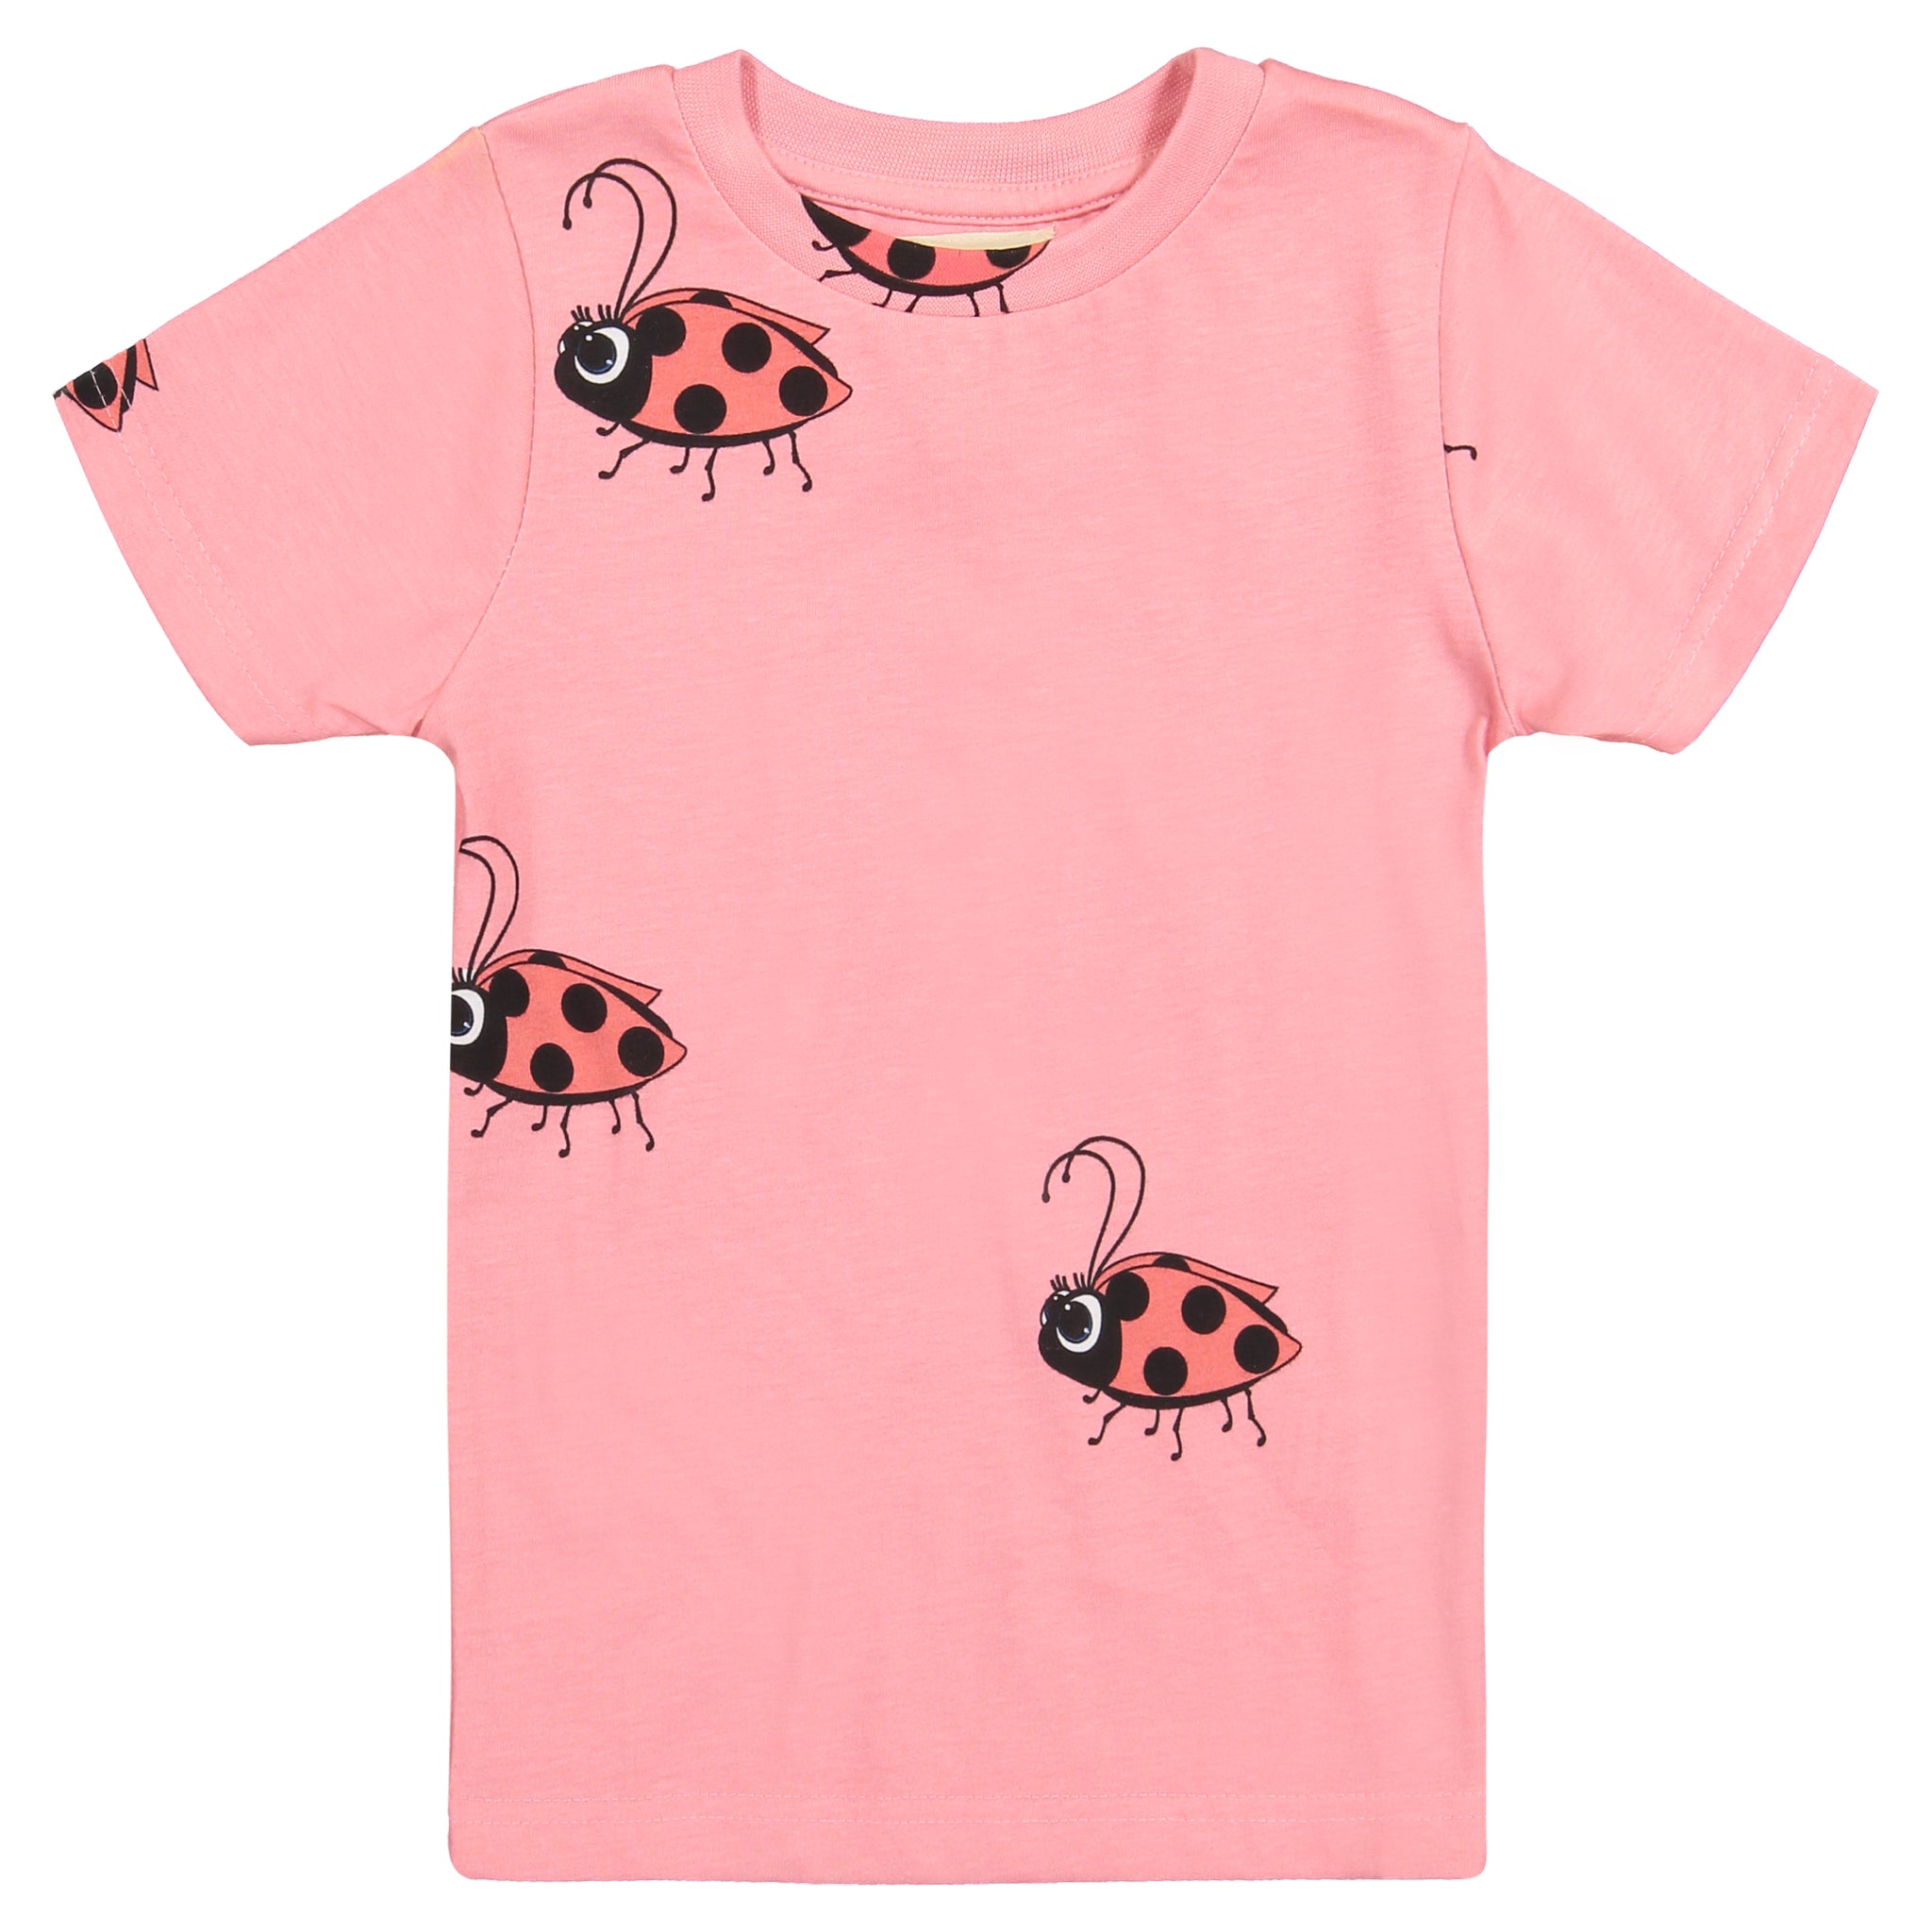 Ladybug T Shirt